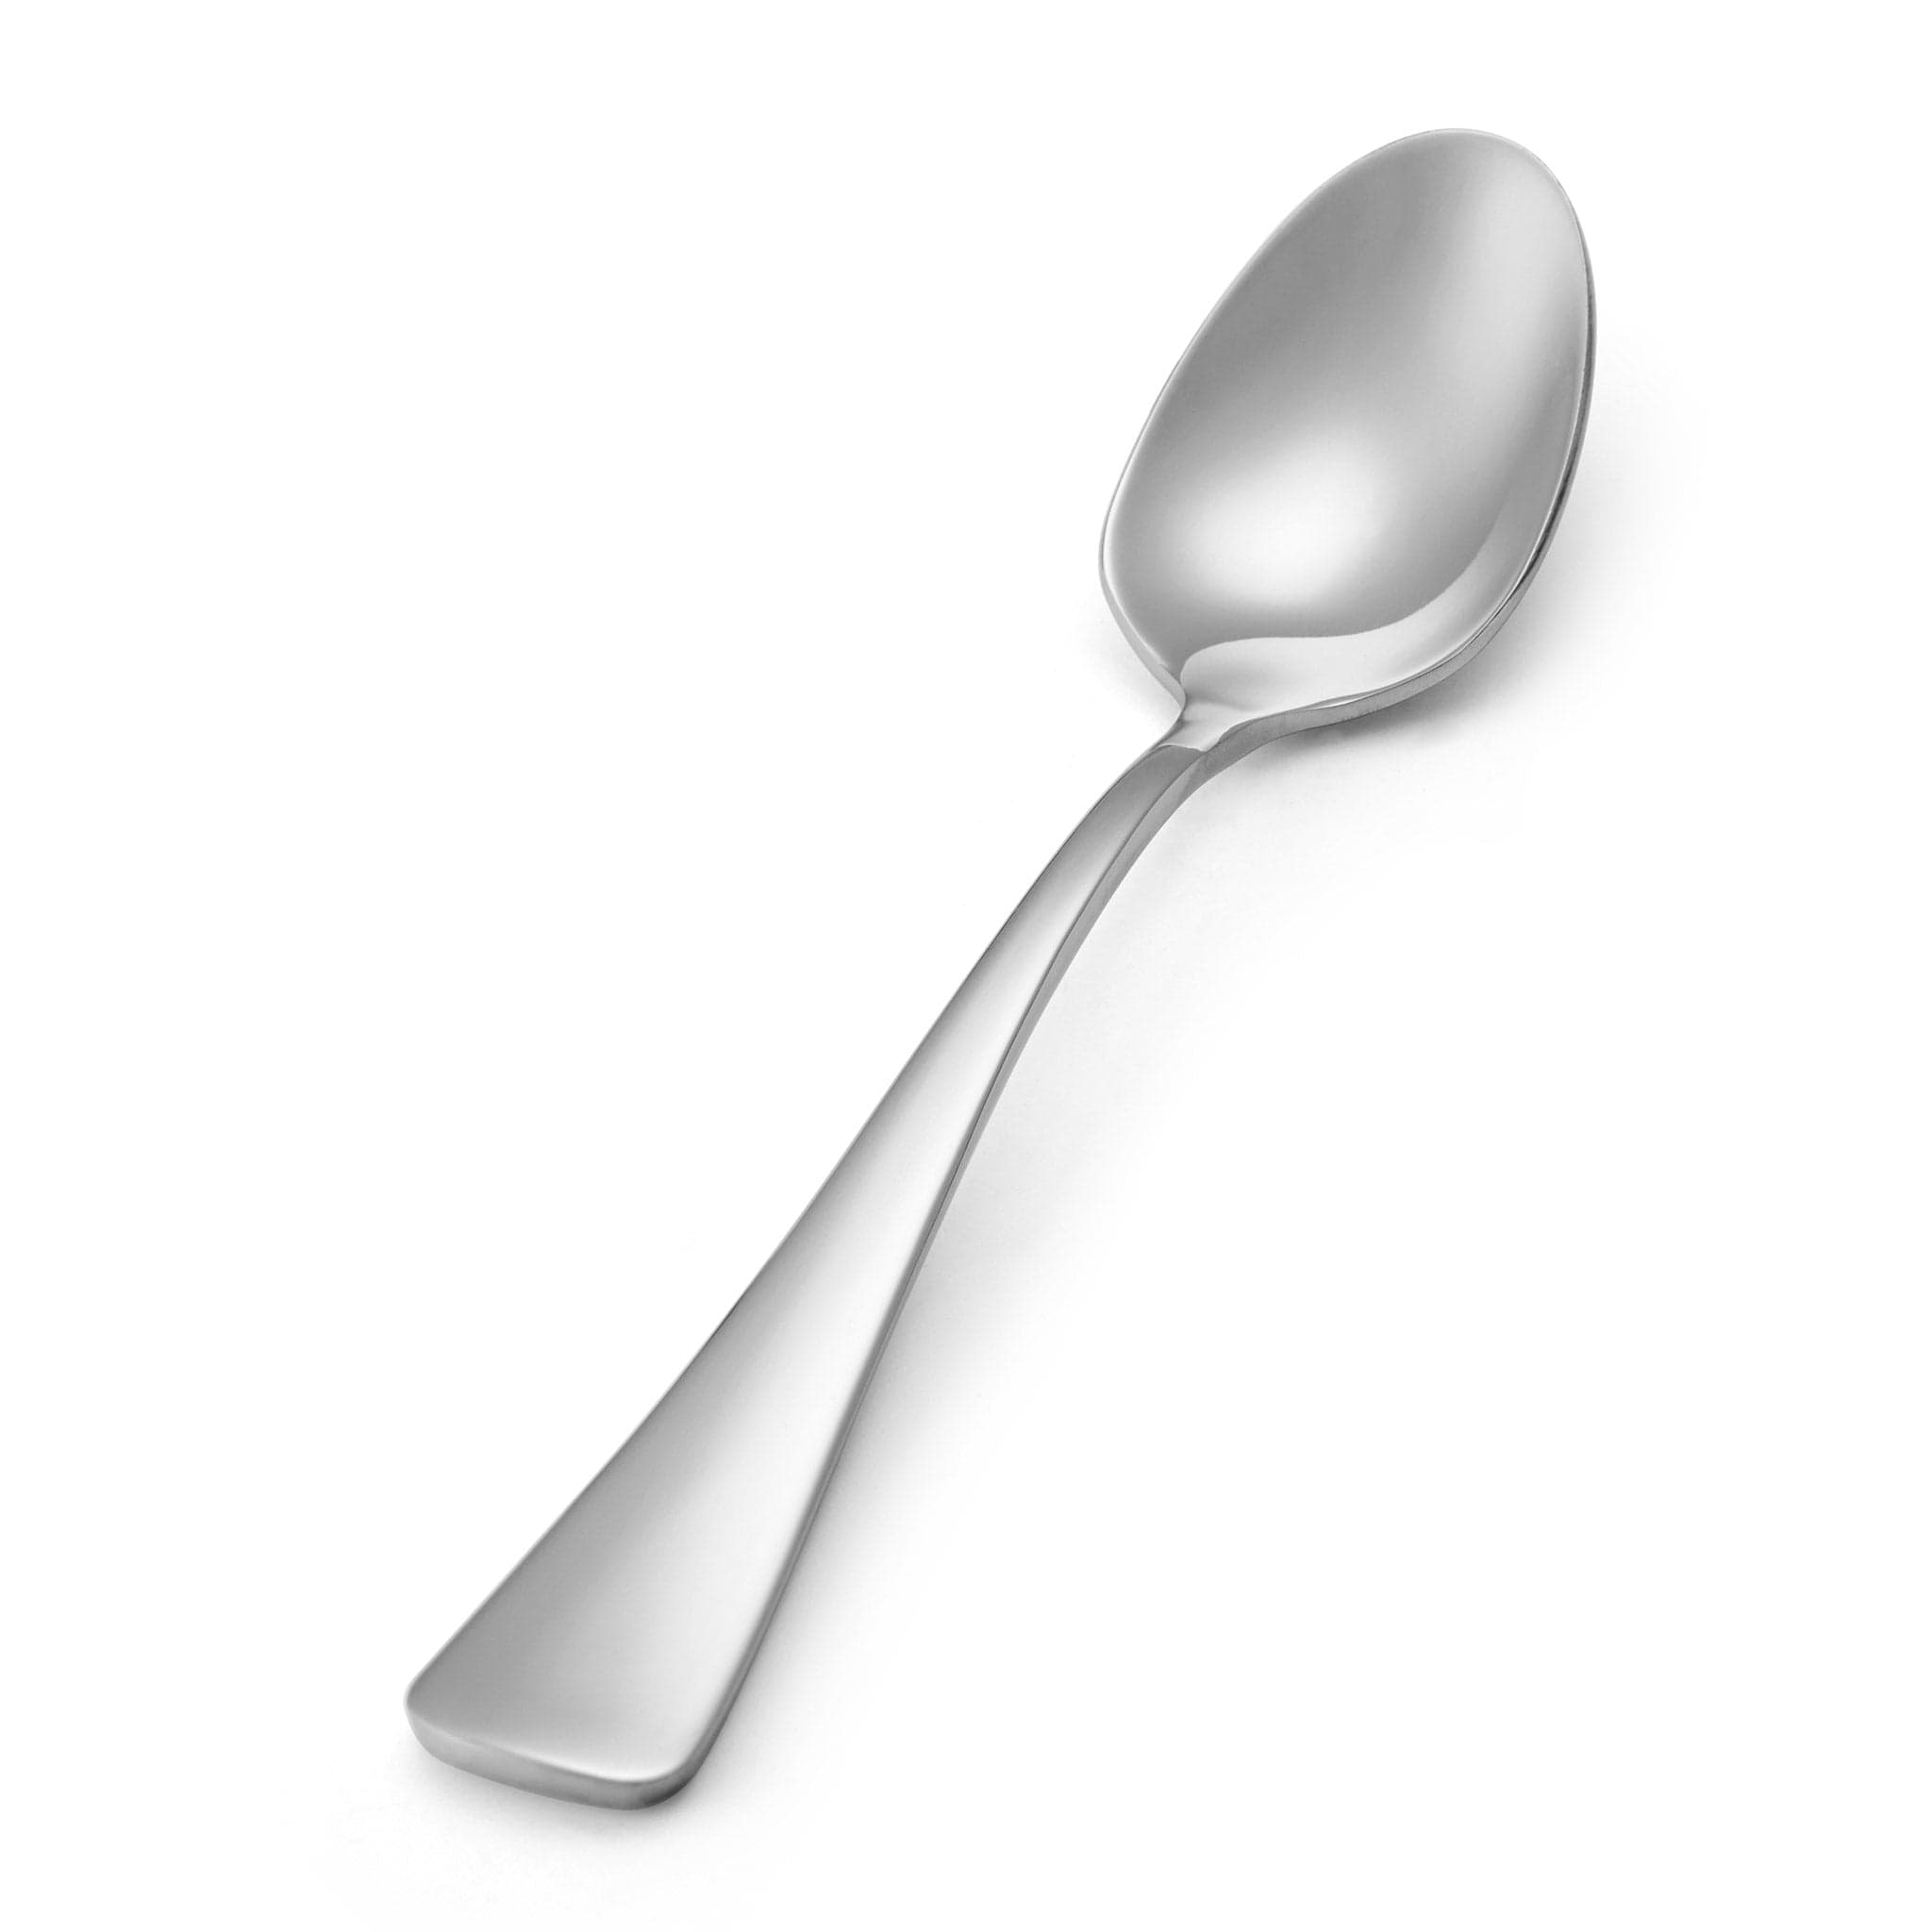 Blair 18/10 Coffee Spoon 7.3" Stainless Steel